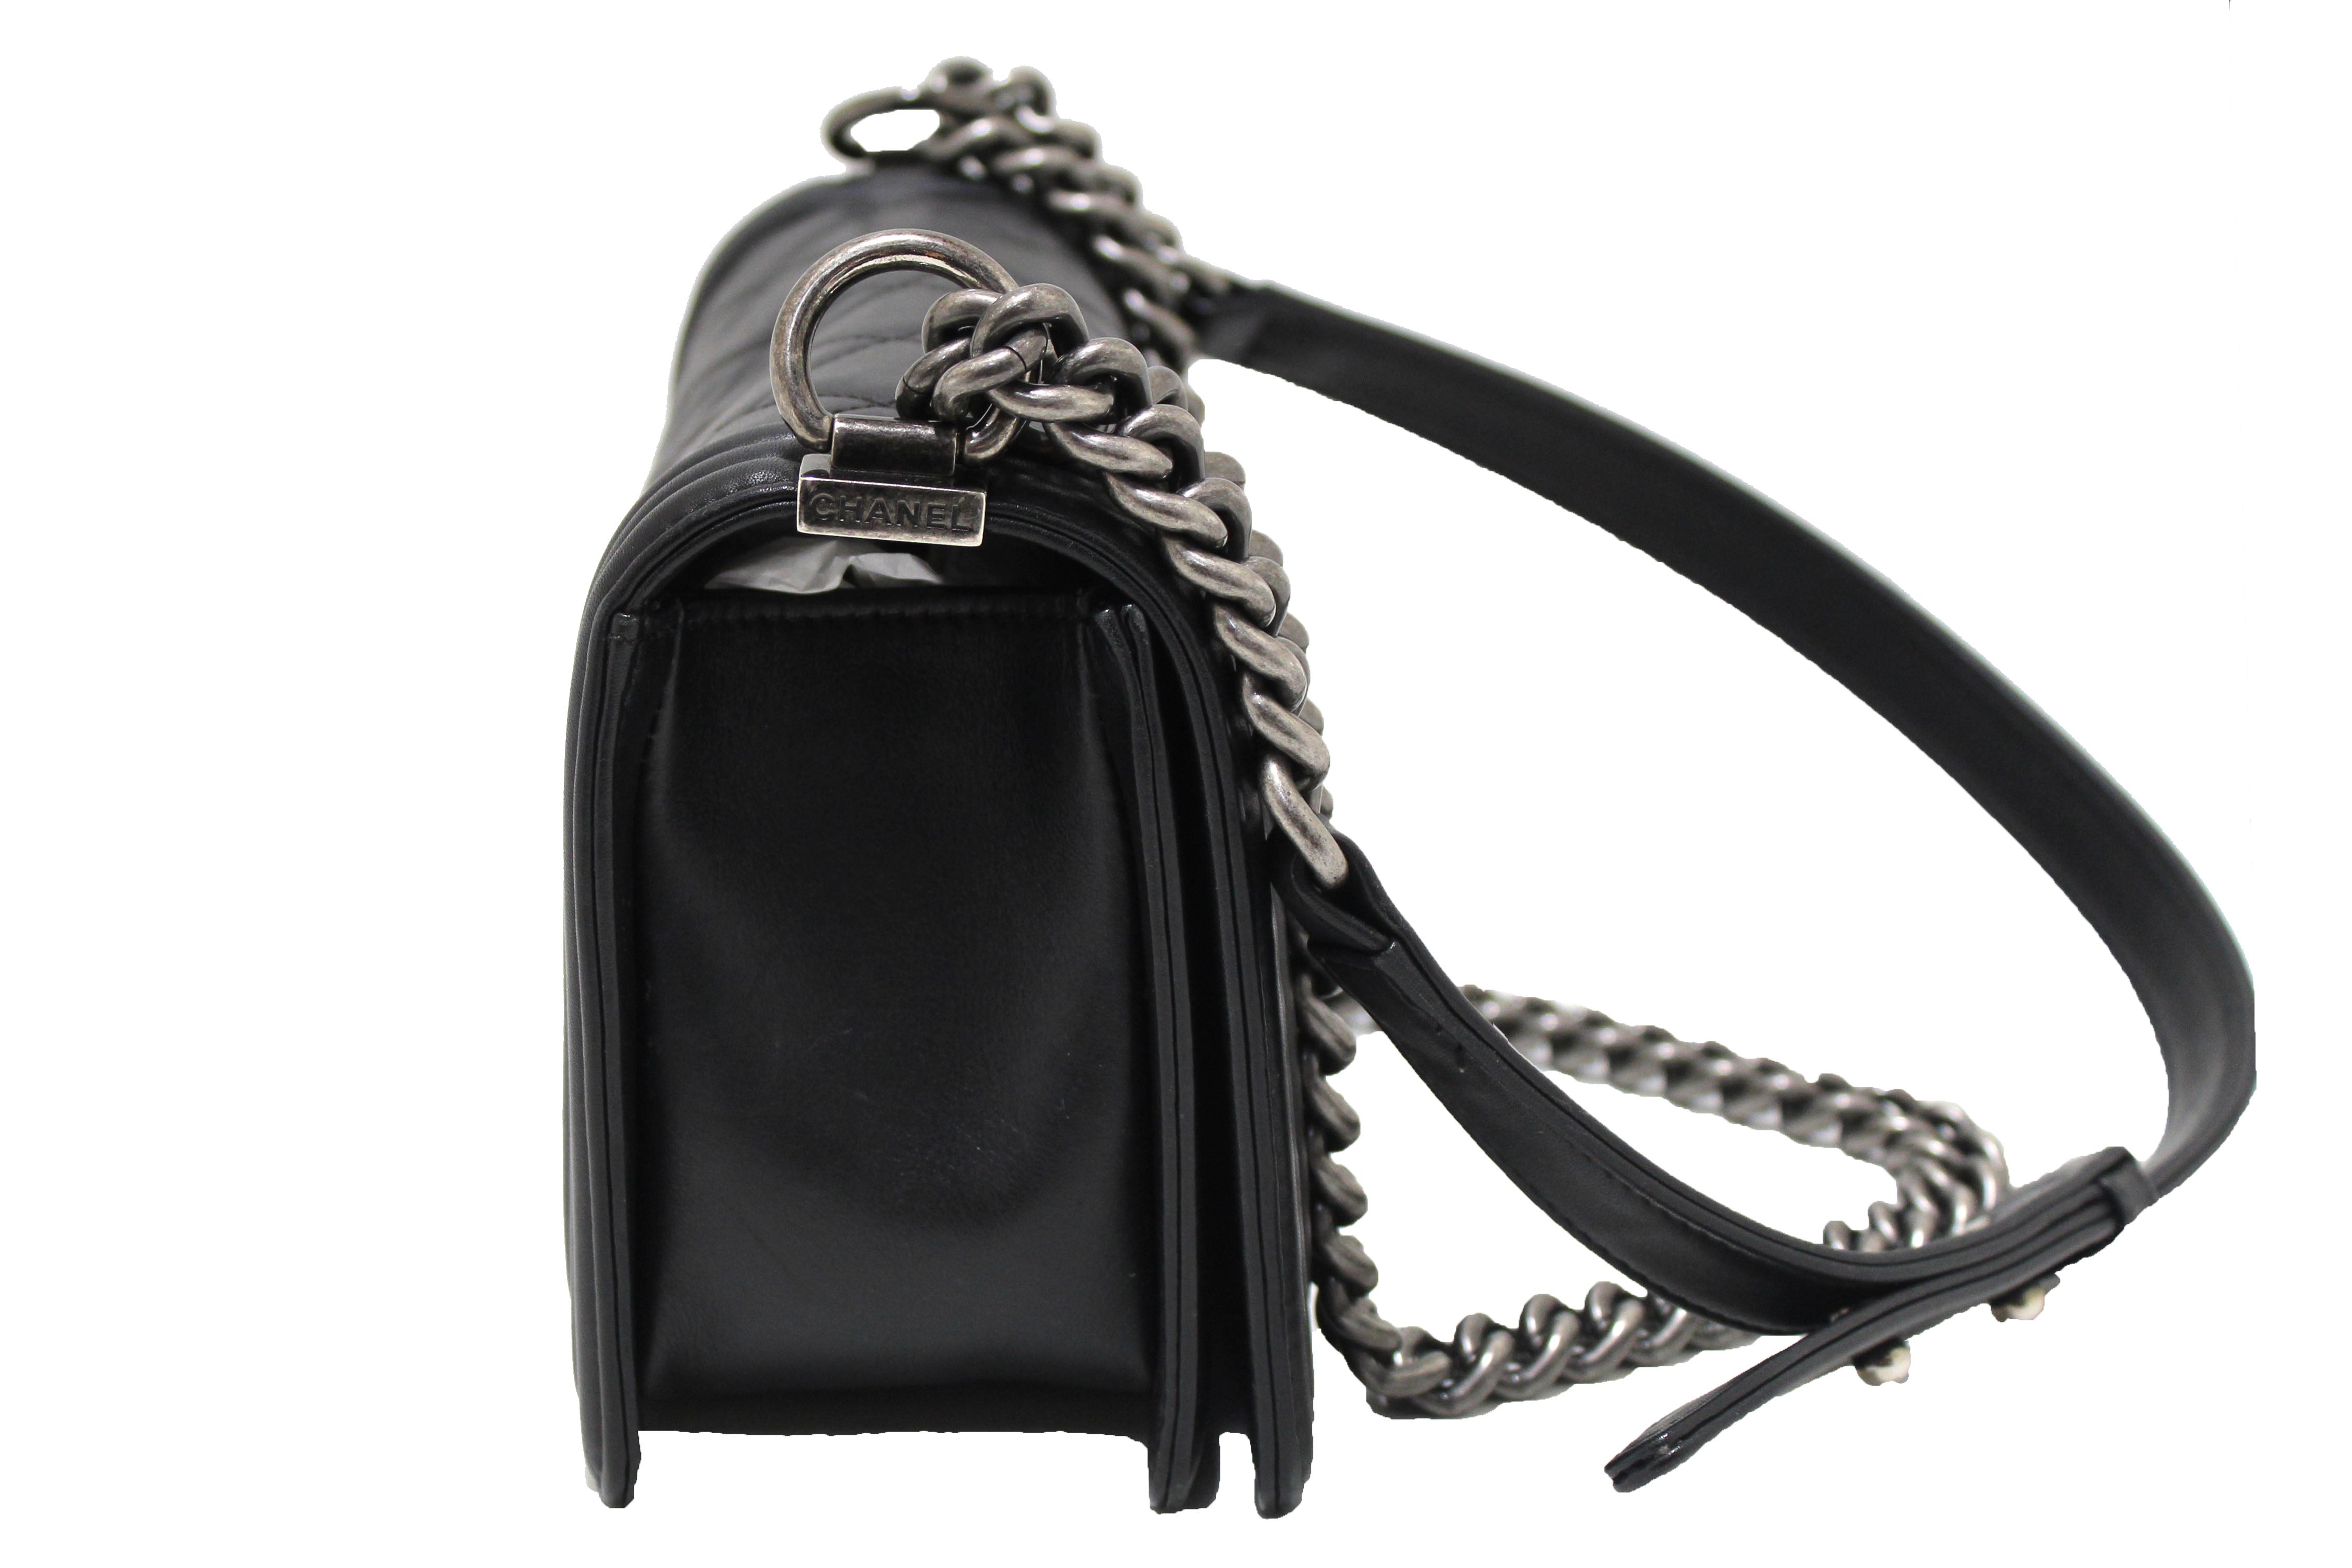 Authentic Chanel Black Quilted Calfskin Old Medium Boy Shoulder Bag